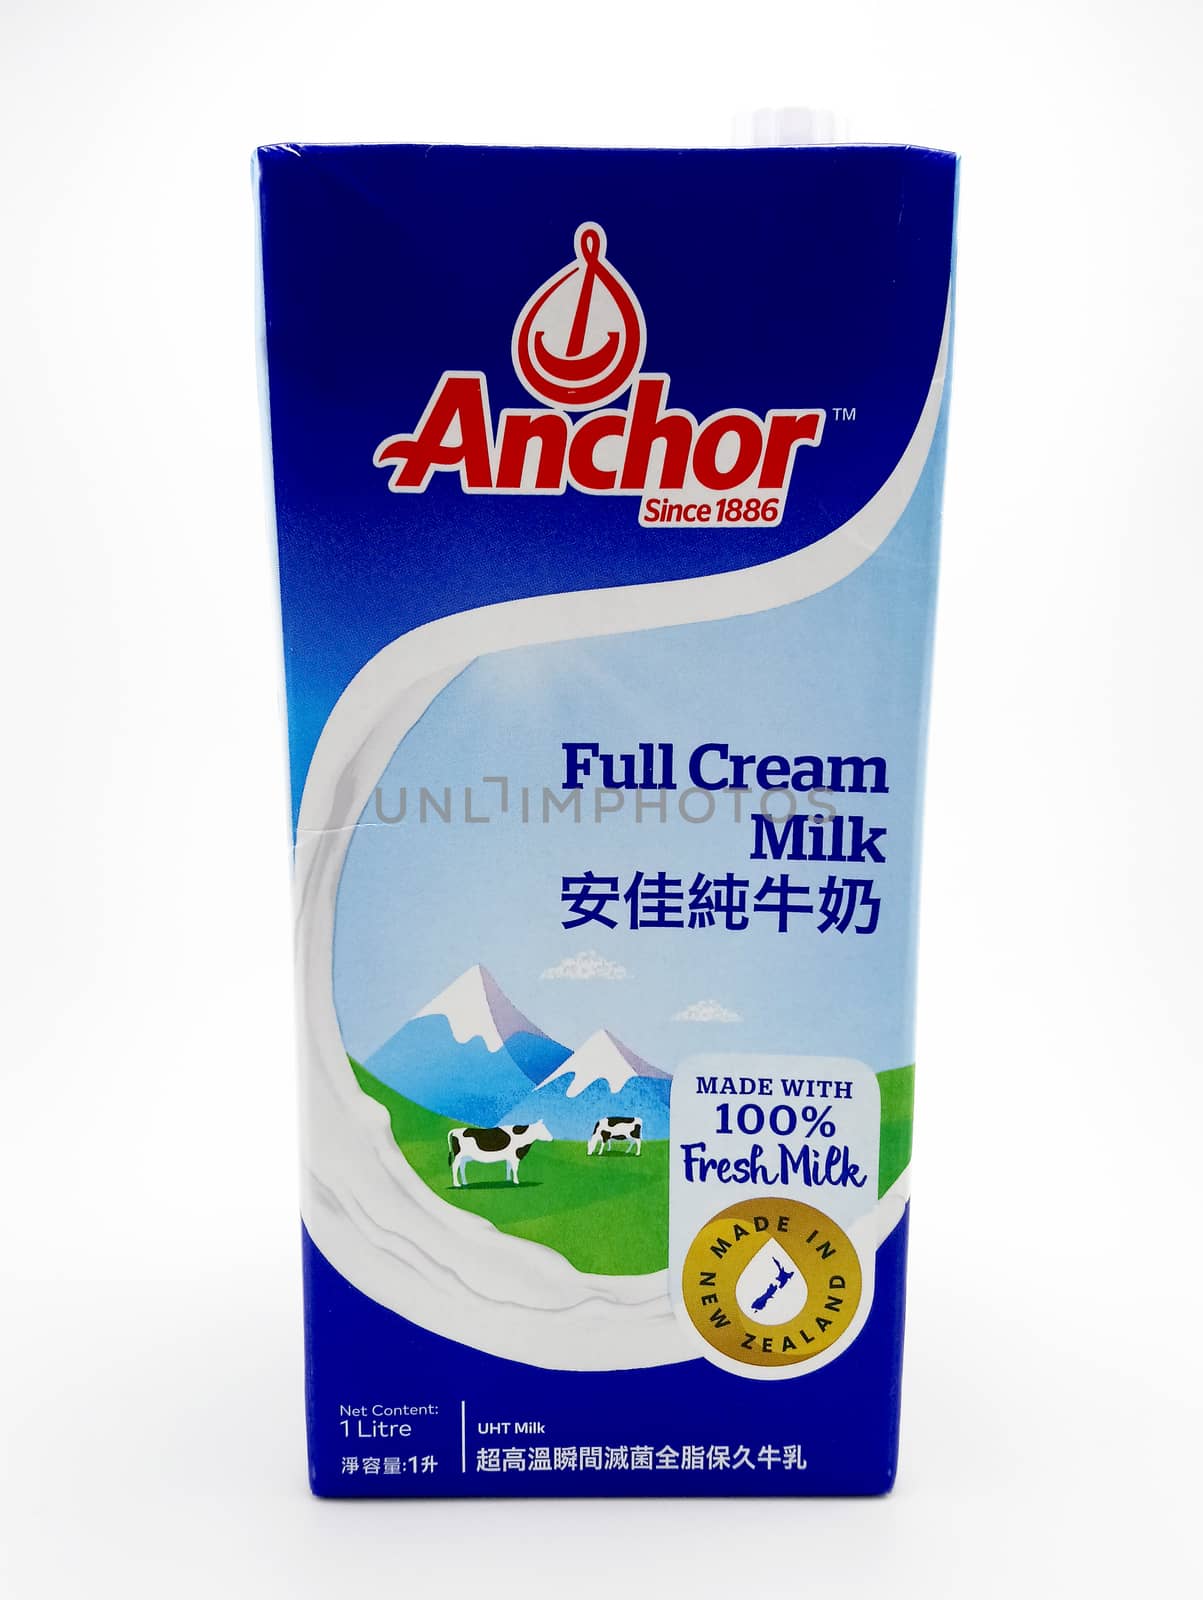 MANILA, PH - JUNE 23 - Anchor full cream milk on June 23, 2020 in Manila, Philippines.